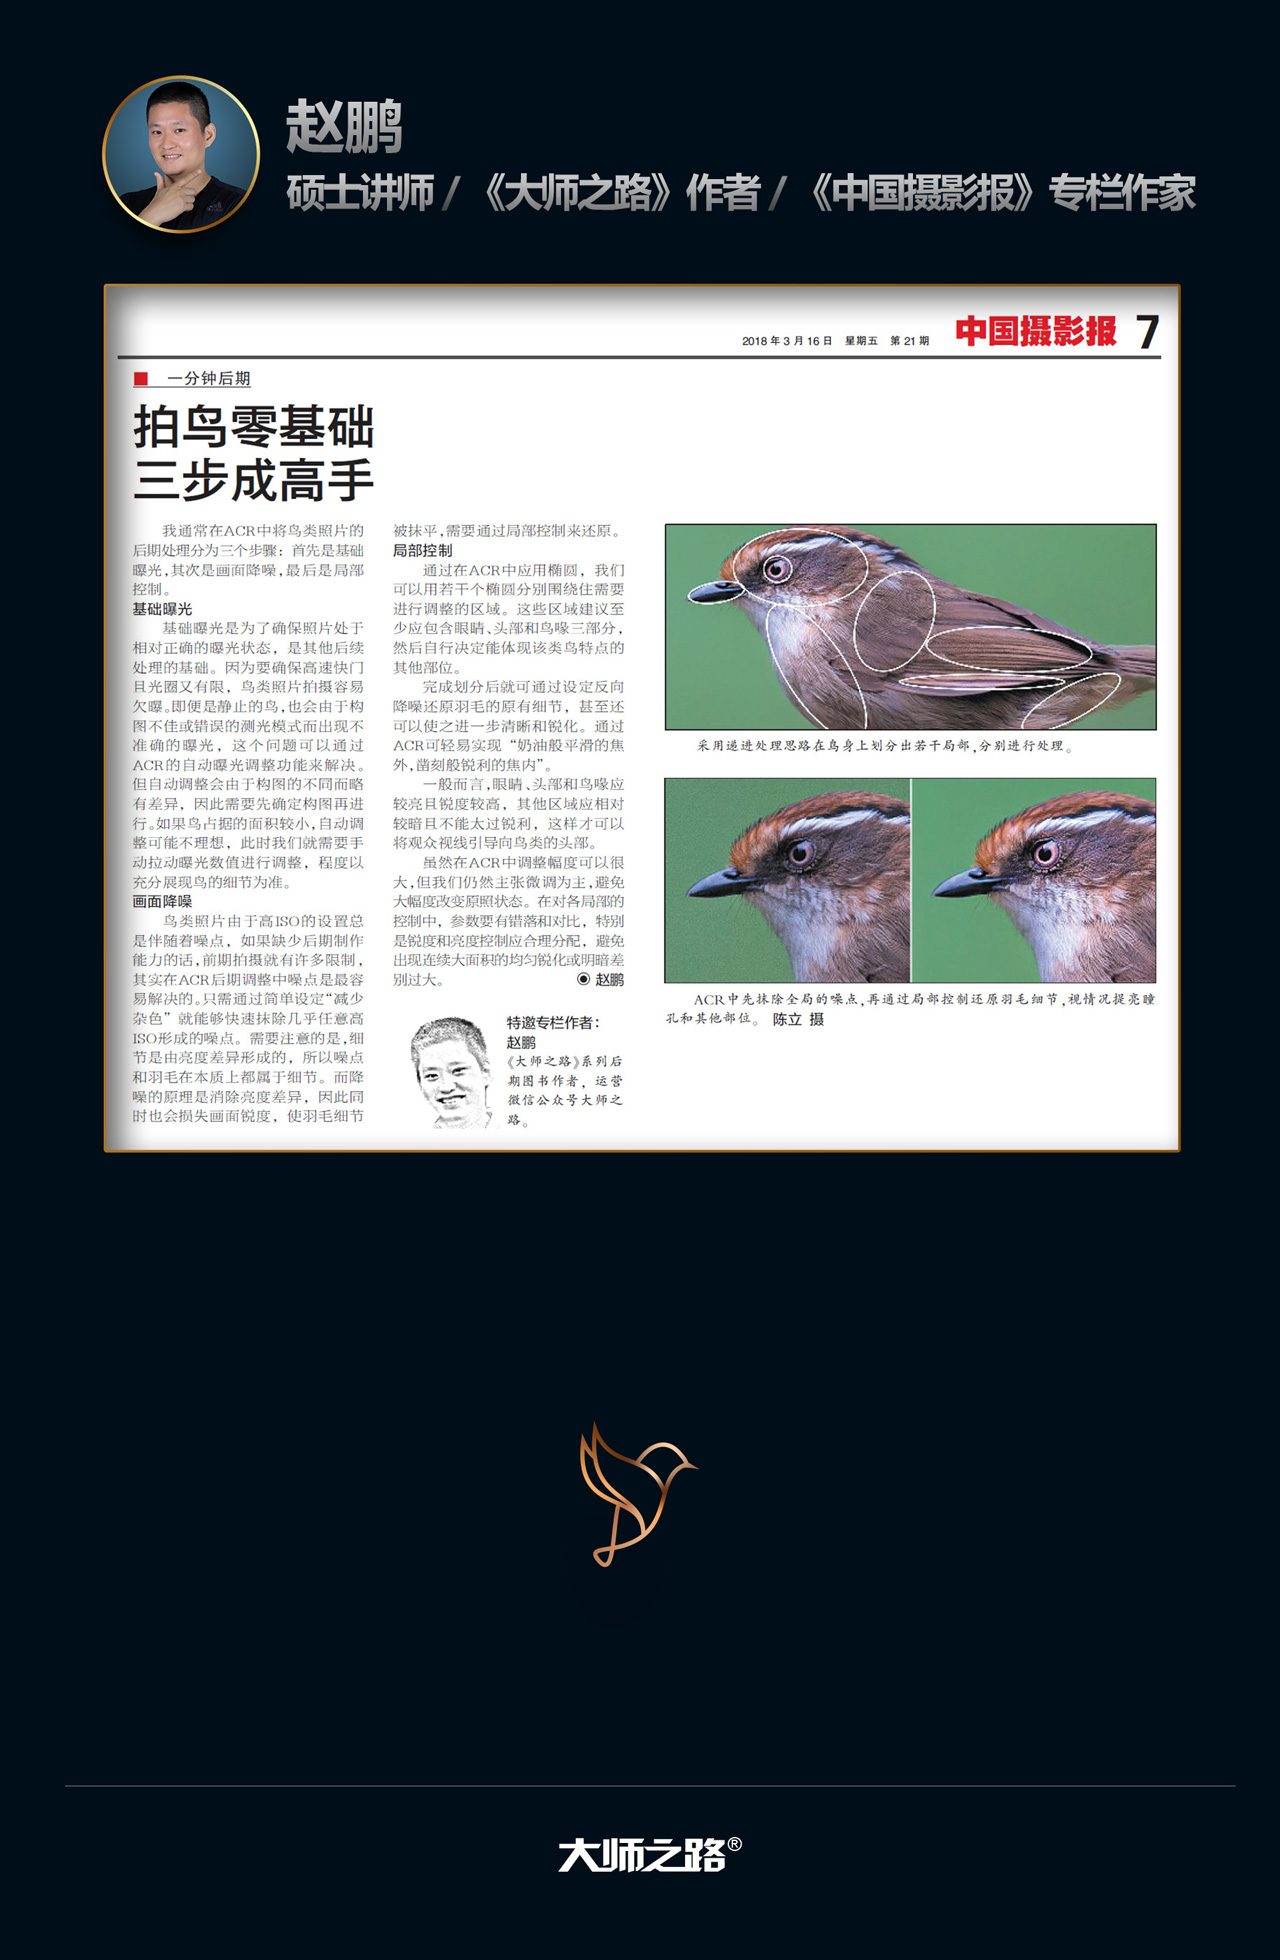 zero_bird_mobile02_01_03.jpg